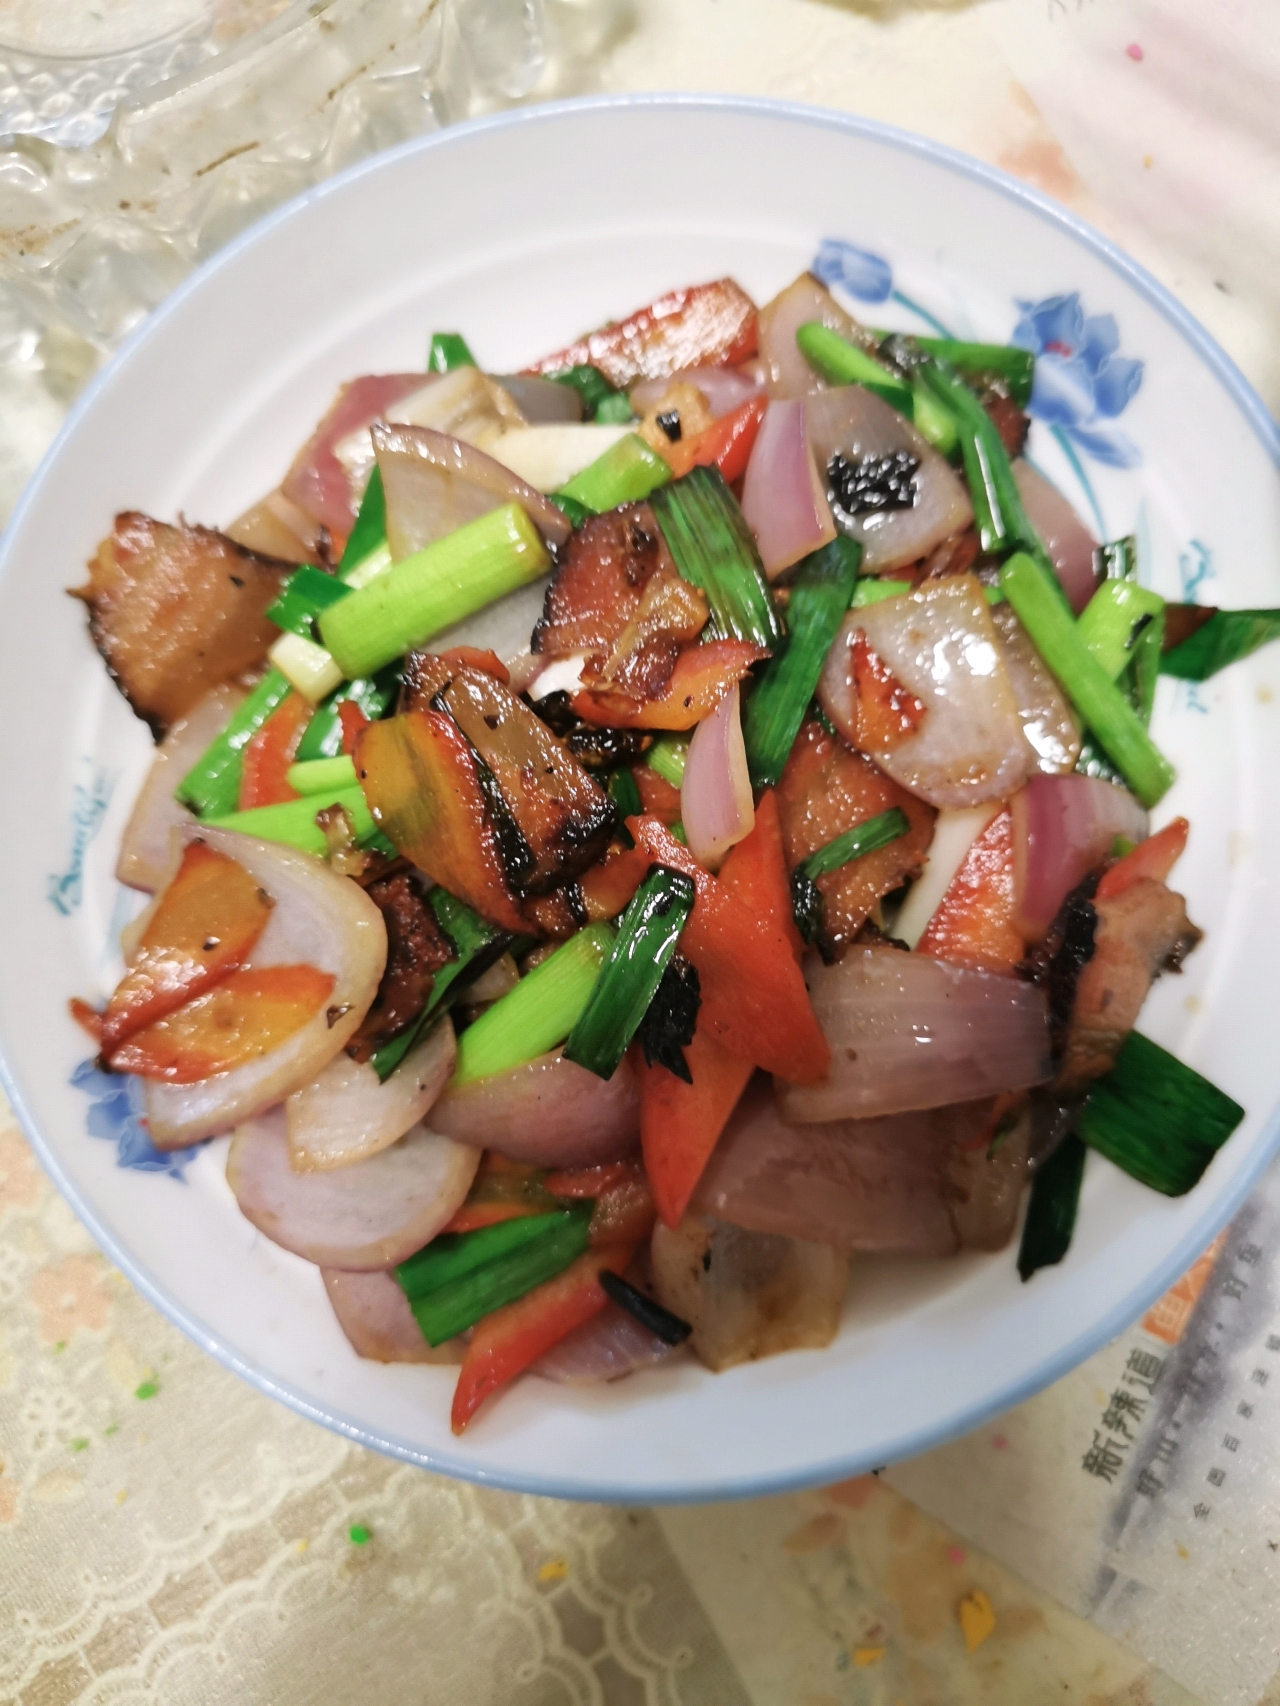 超级下饭的一道菜蒜苔炒风干腊肉